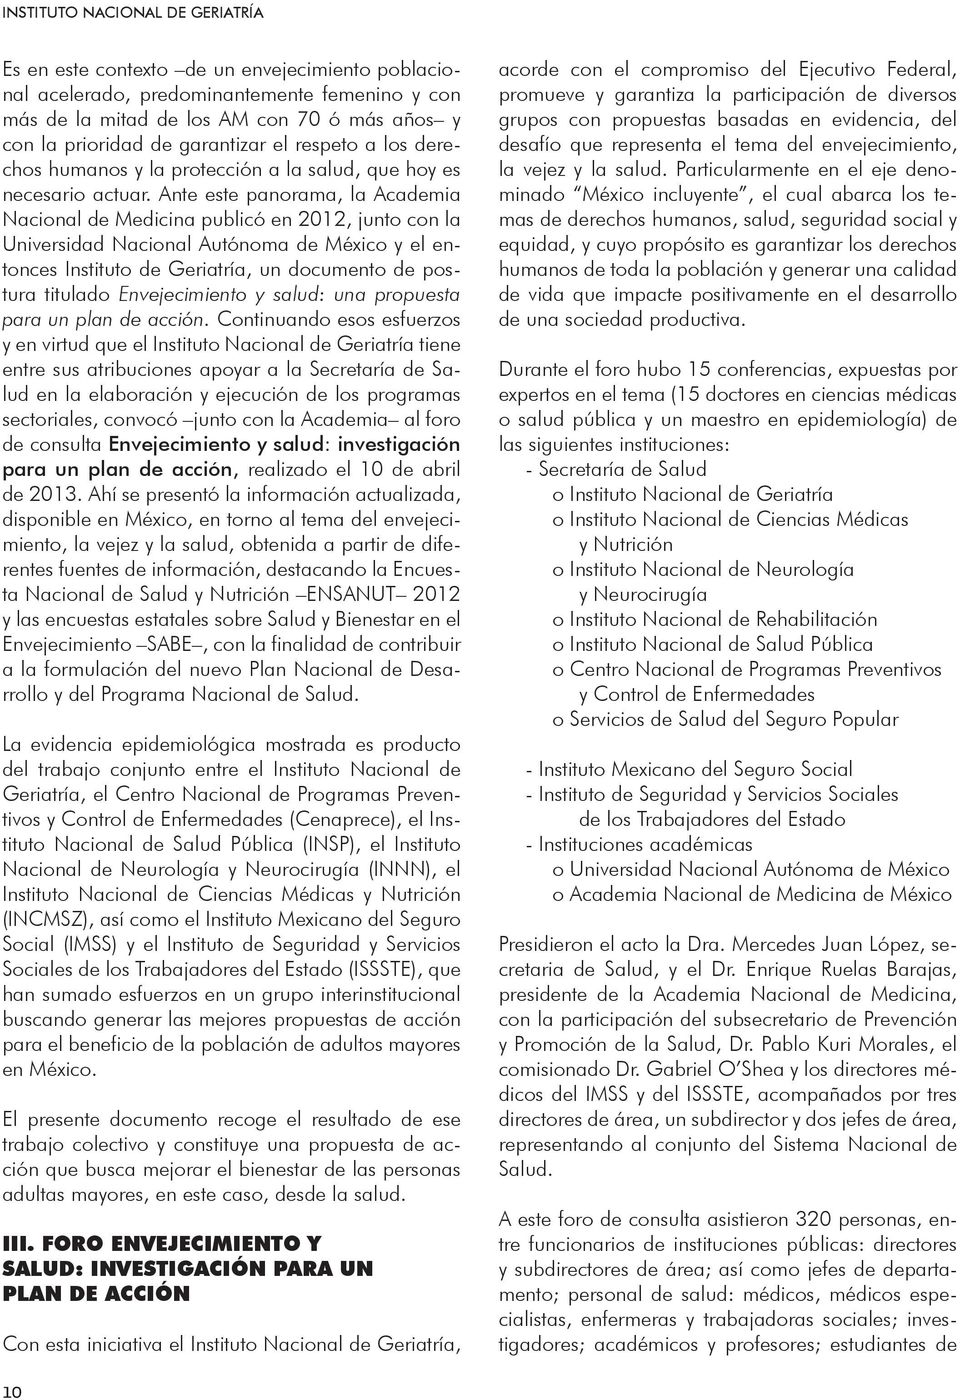 Ante este panorama, la Academia Nacional de Medicina publicó en 2012, junto con la Universidad Nacional Autónoma de México y el entonces Instituto de Geriatría, un documento de postura titulado